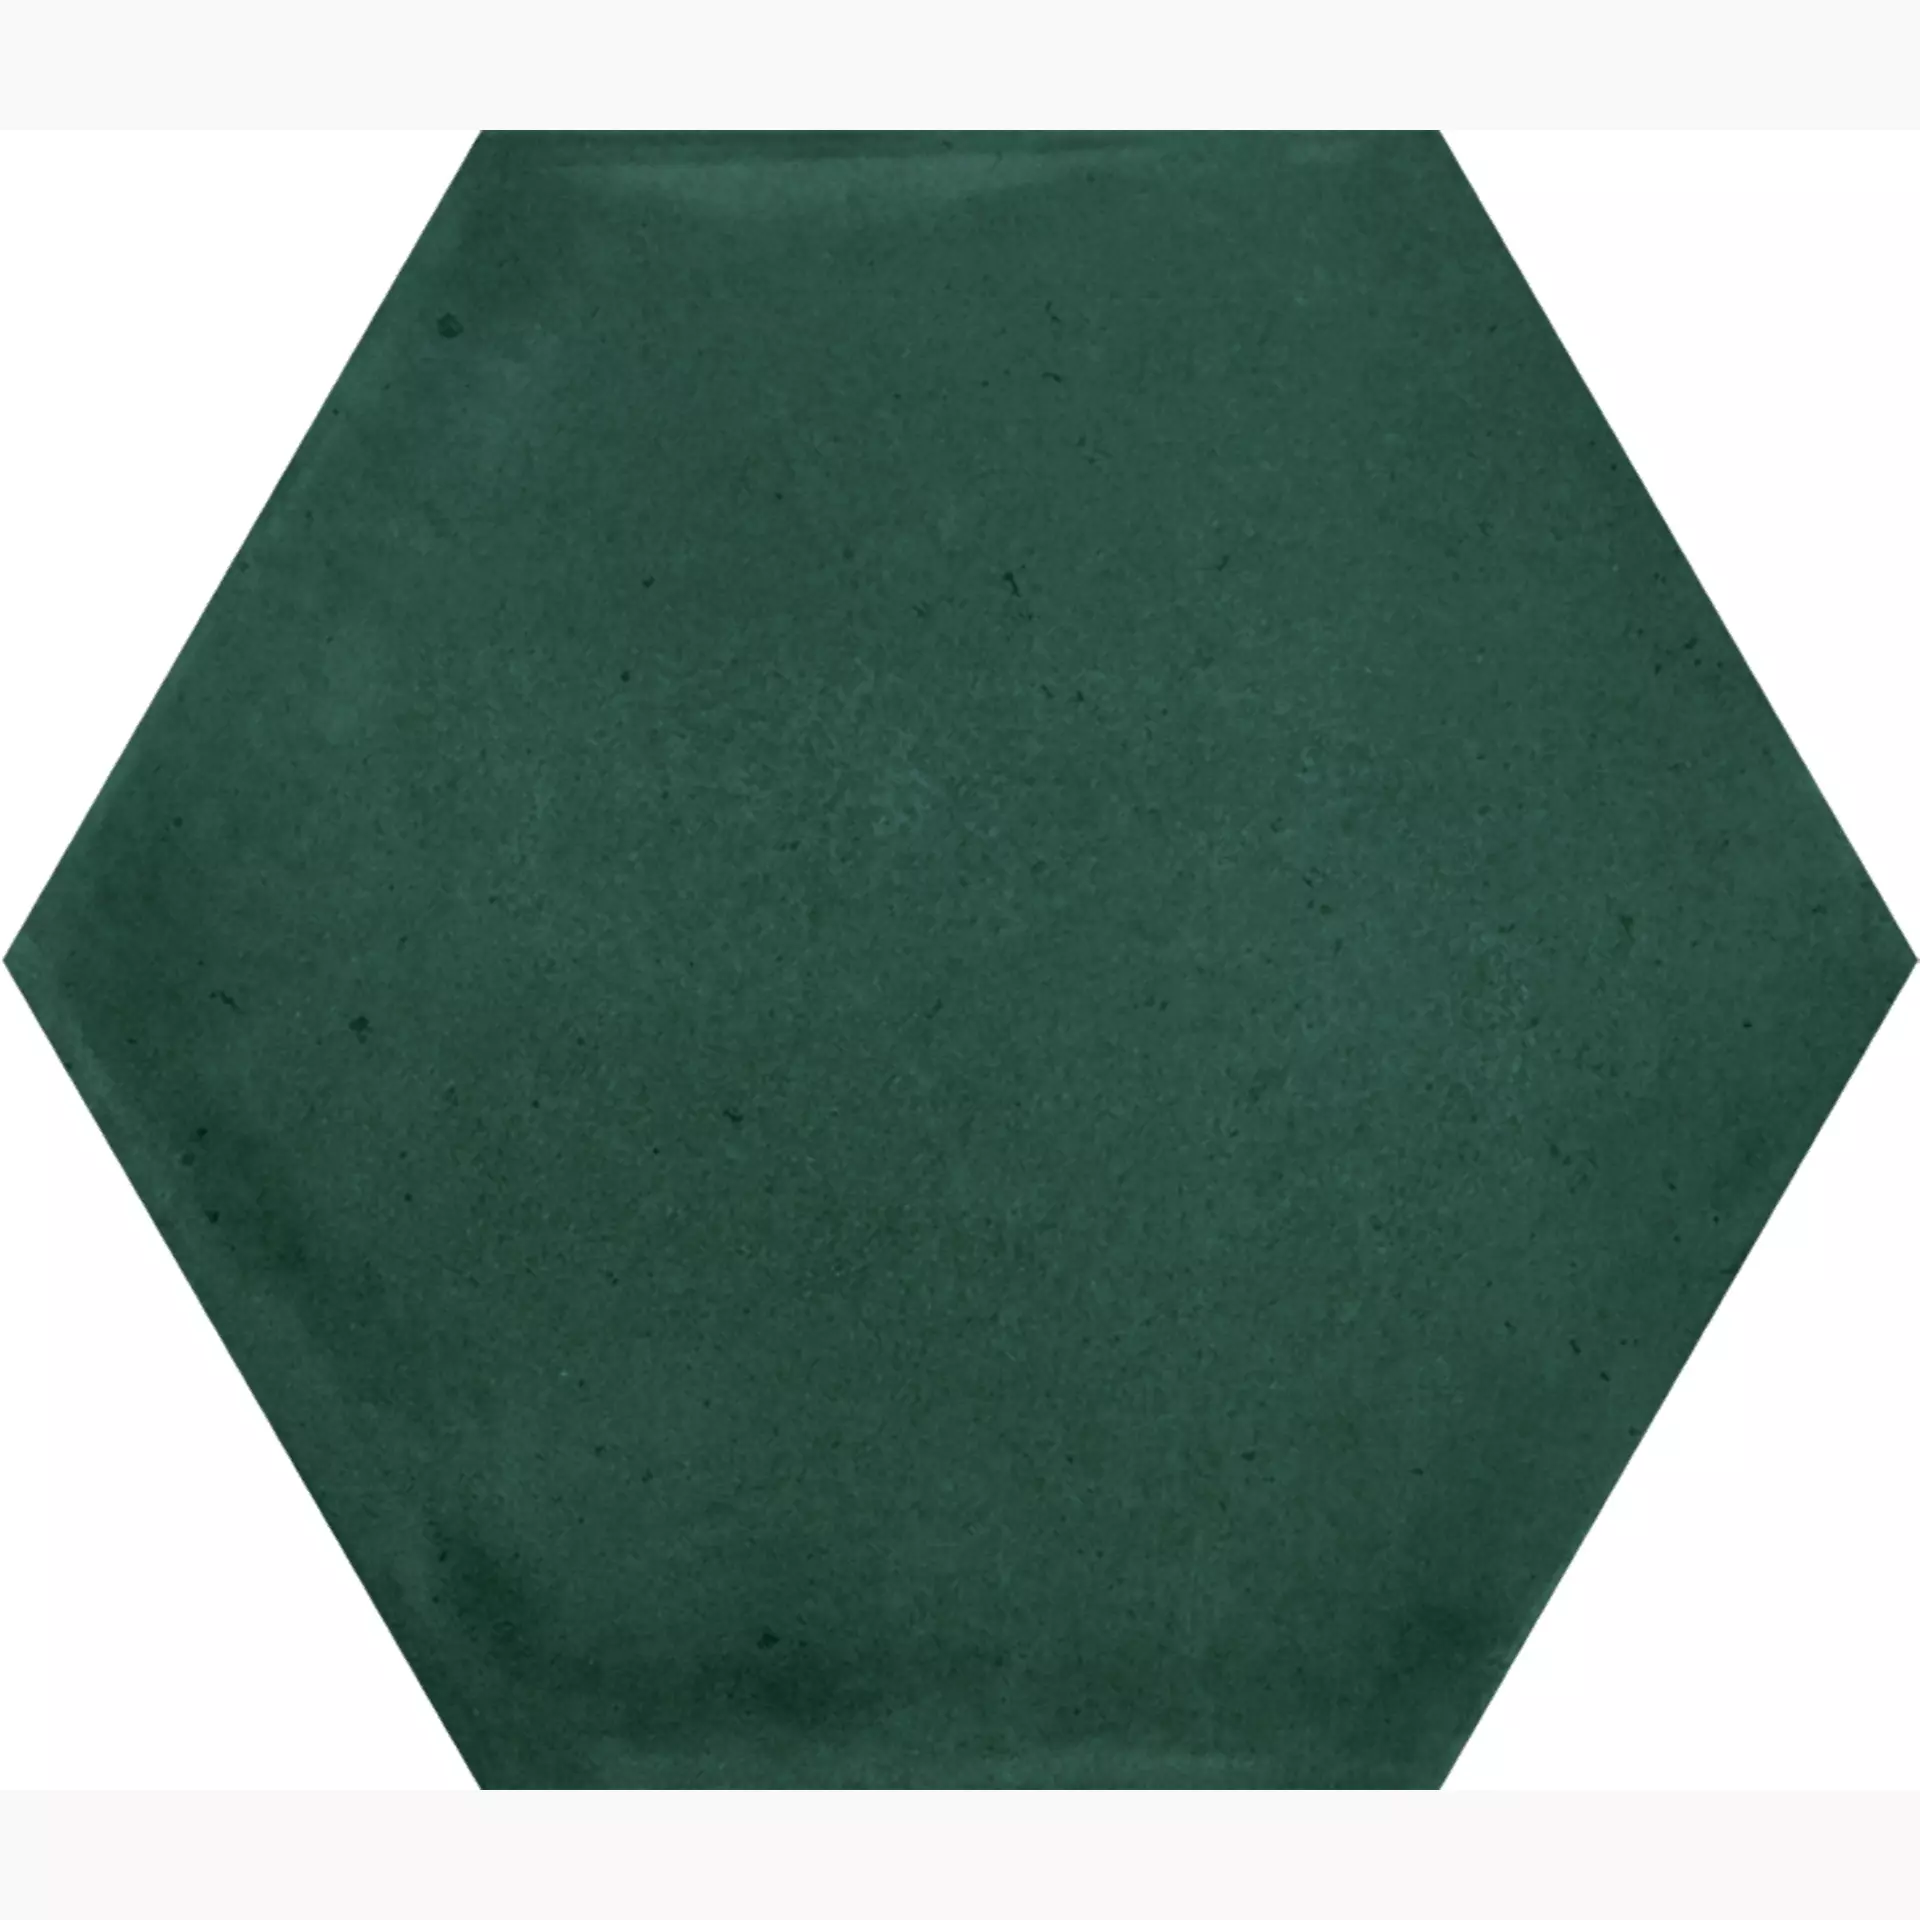 La Fabbrica AvA Small Emerald Bright Esagona 180044 10,7x12,4cm 9mm